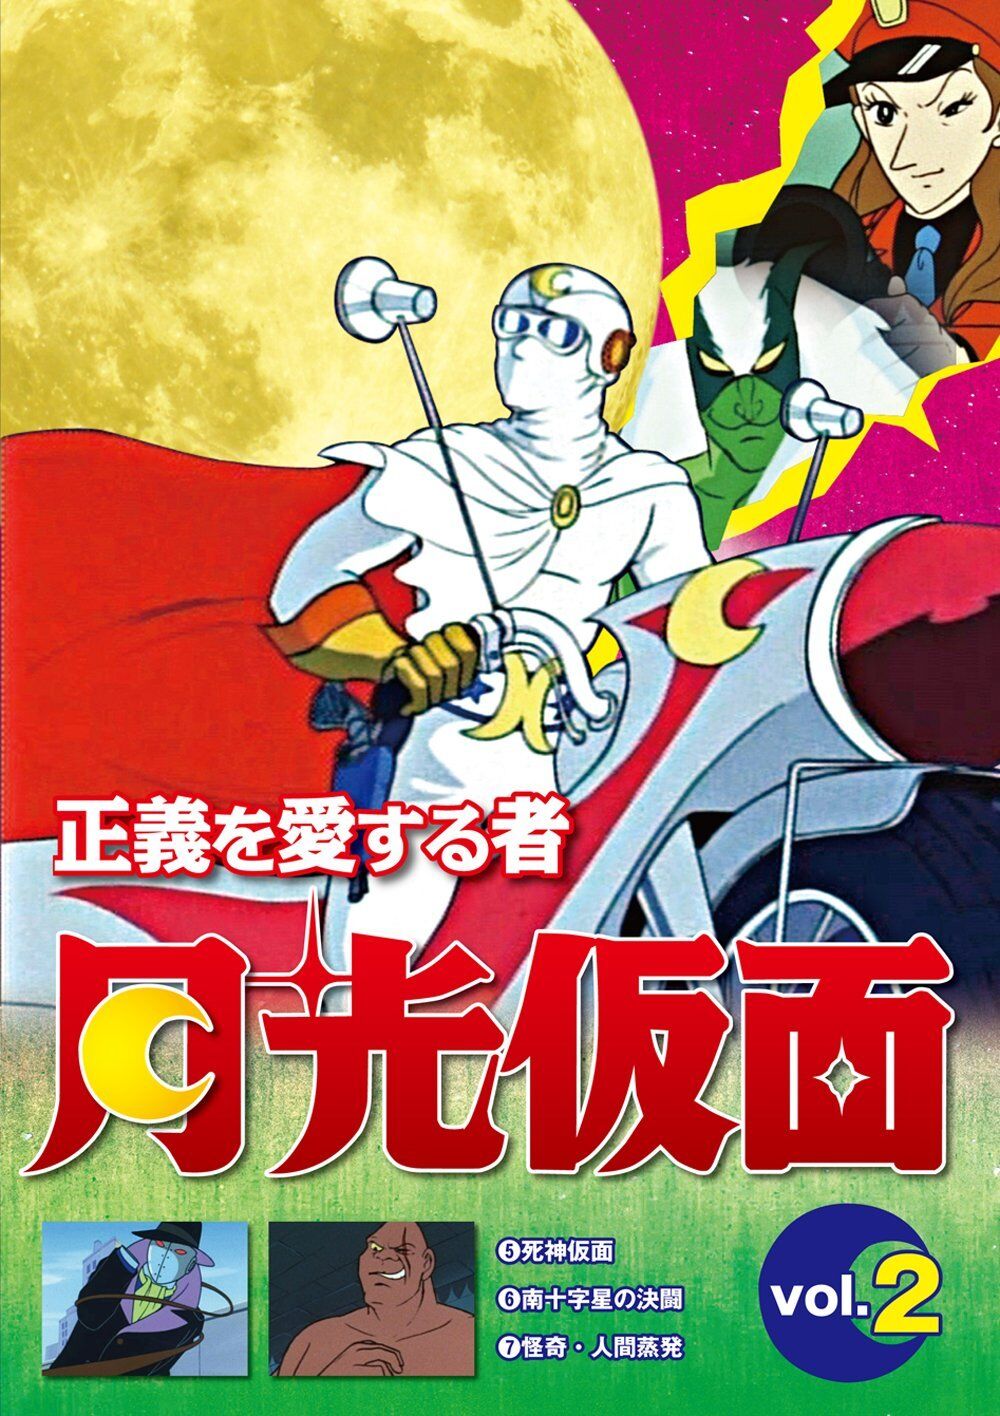 月光仮面 Gekkō Kamen. Capitán Centella, serie de Anime en español de 39 e... |  TikTok